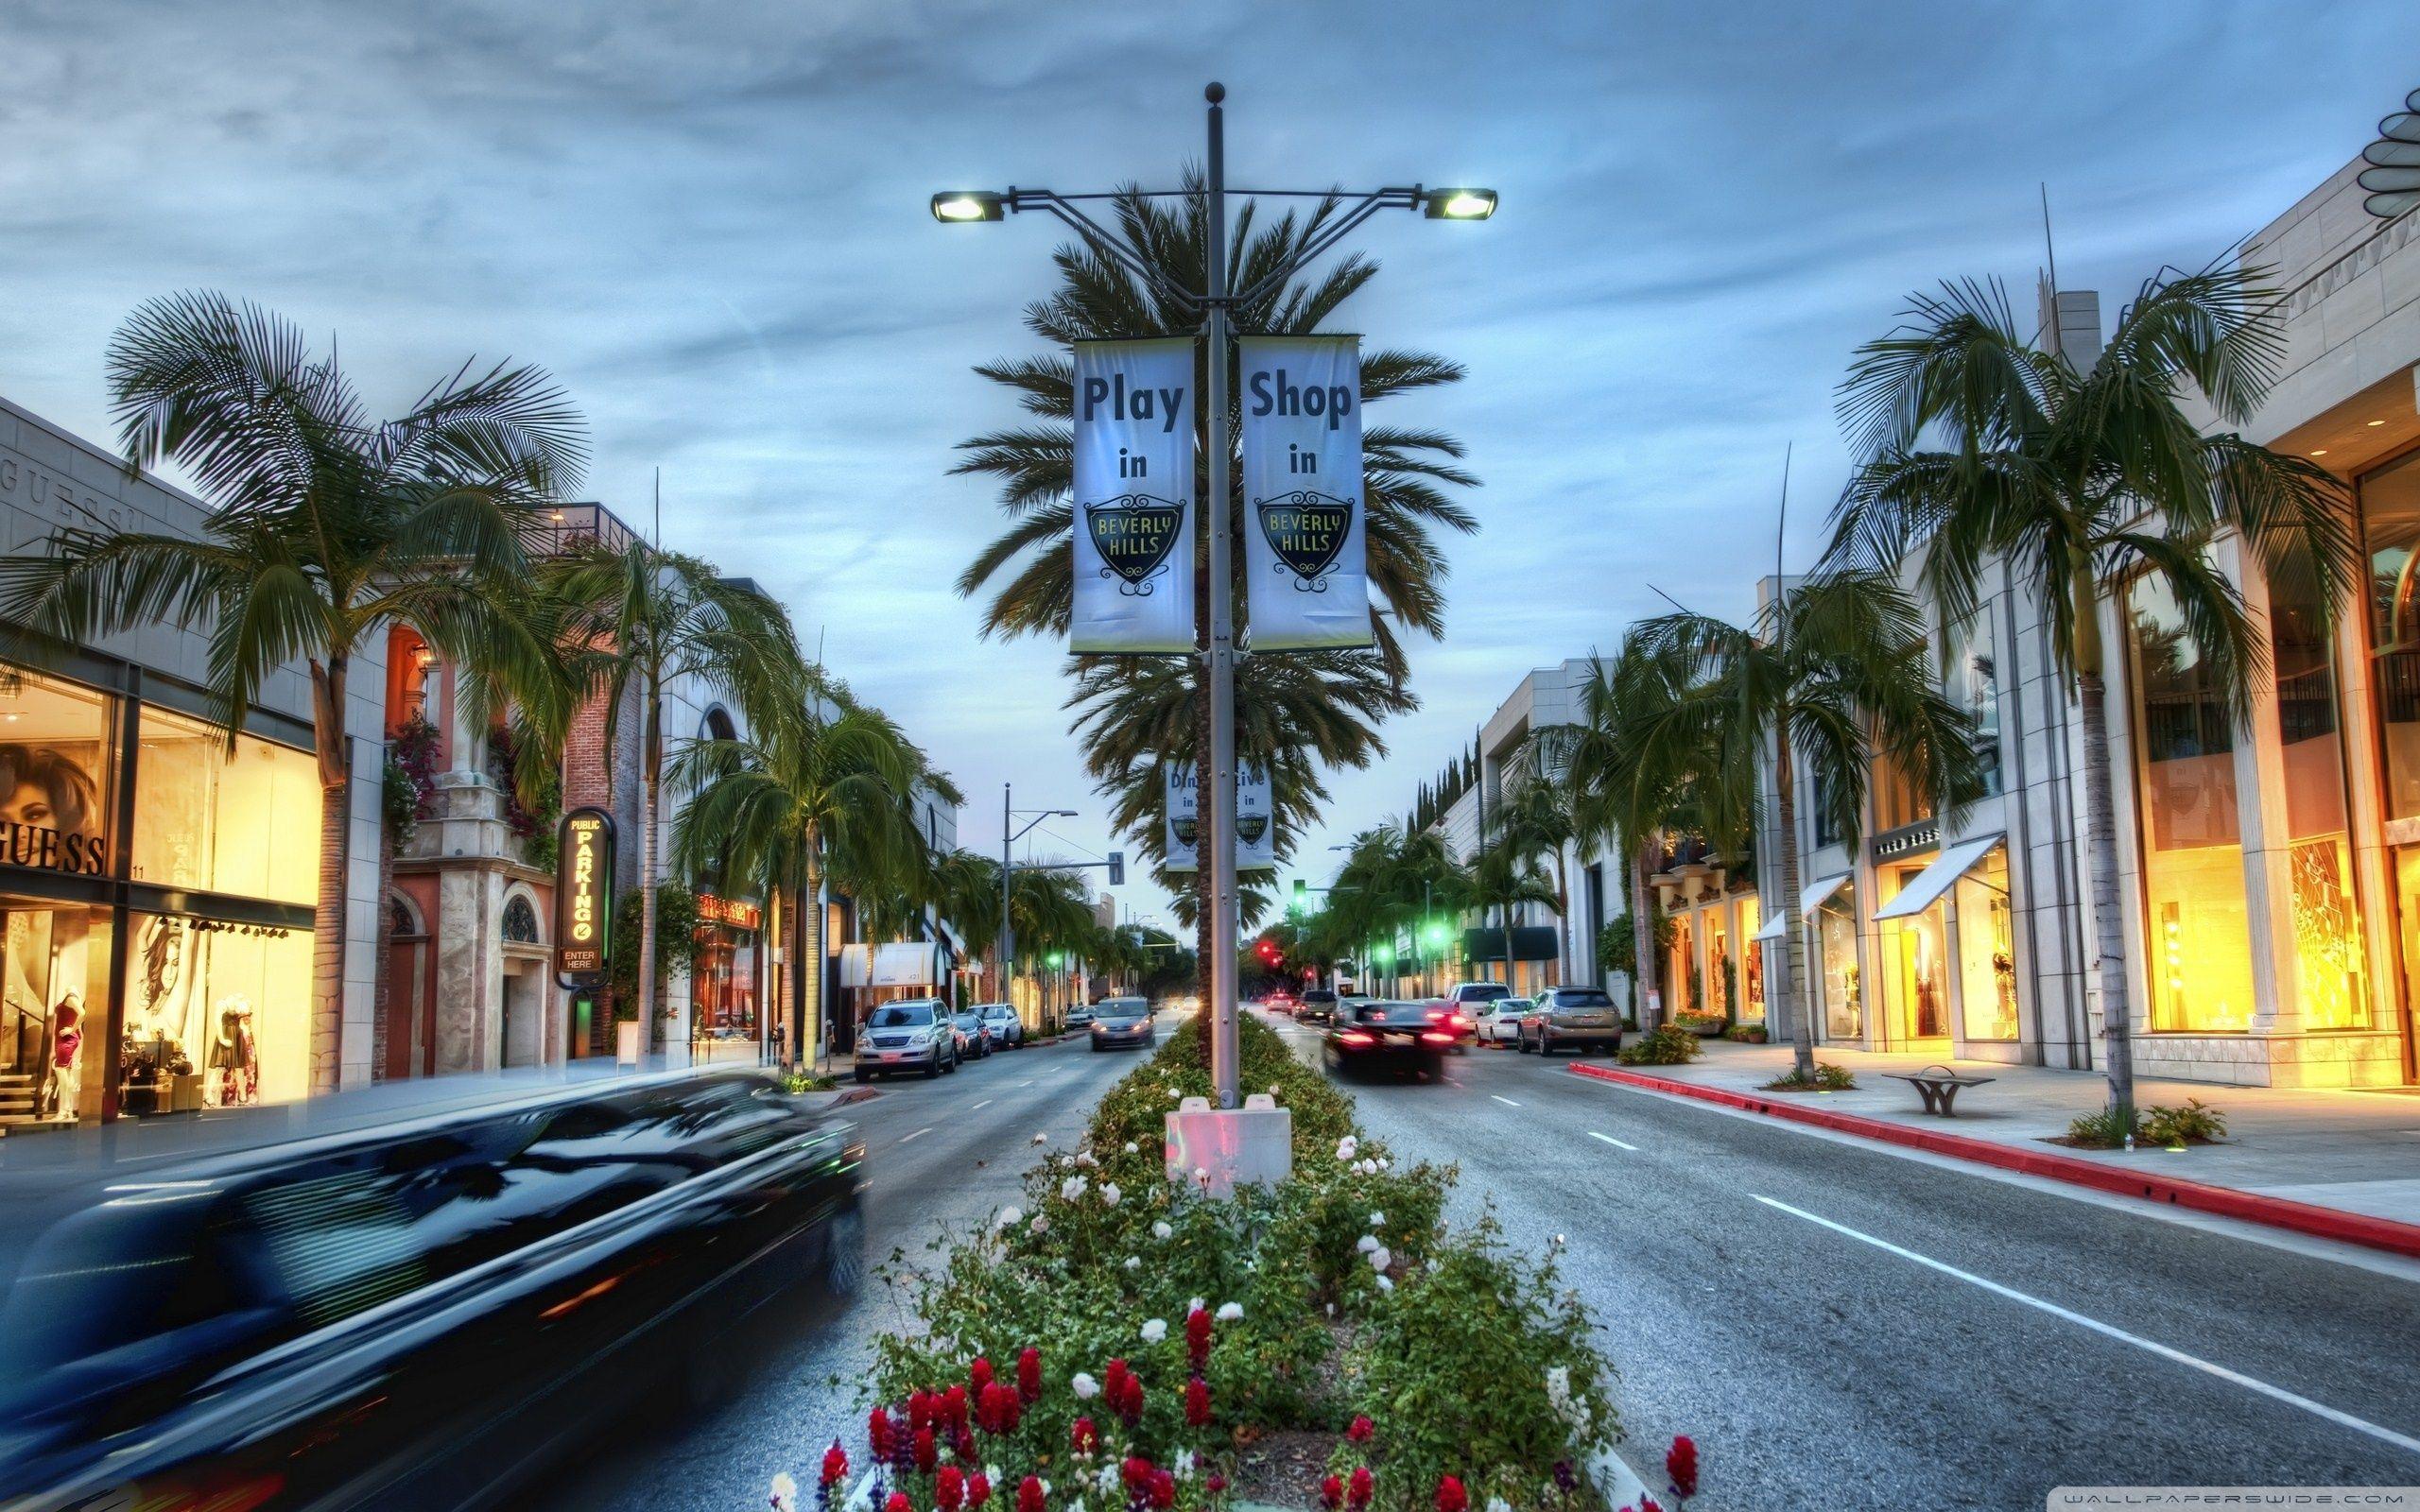 Beverly Hills HD desktop wallpaper, High Definition, Fullscreen